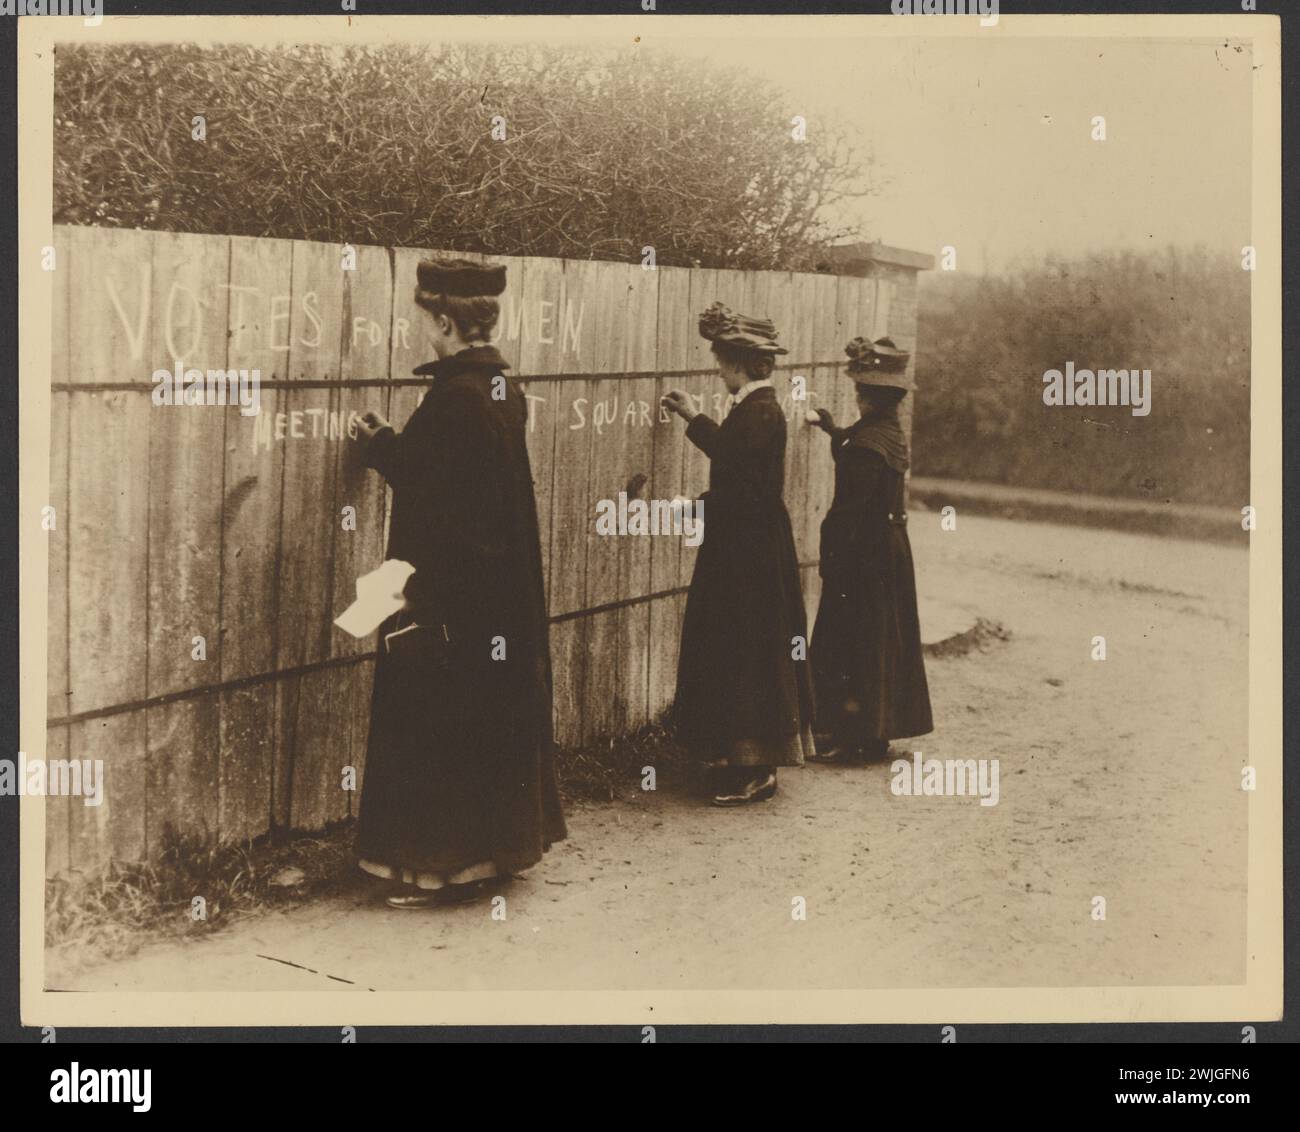 Immagine storica delle Suffragette di donne che scrivono su una recinzione di legno 'Vota per le donne' con il luogo del prossimo incontro. Dai documenti di Bessie Rischbiet, leader australiano del movimento. Foto Stock